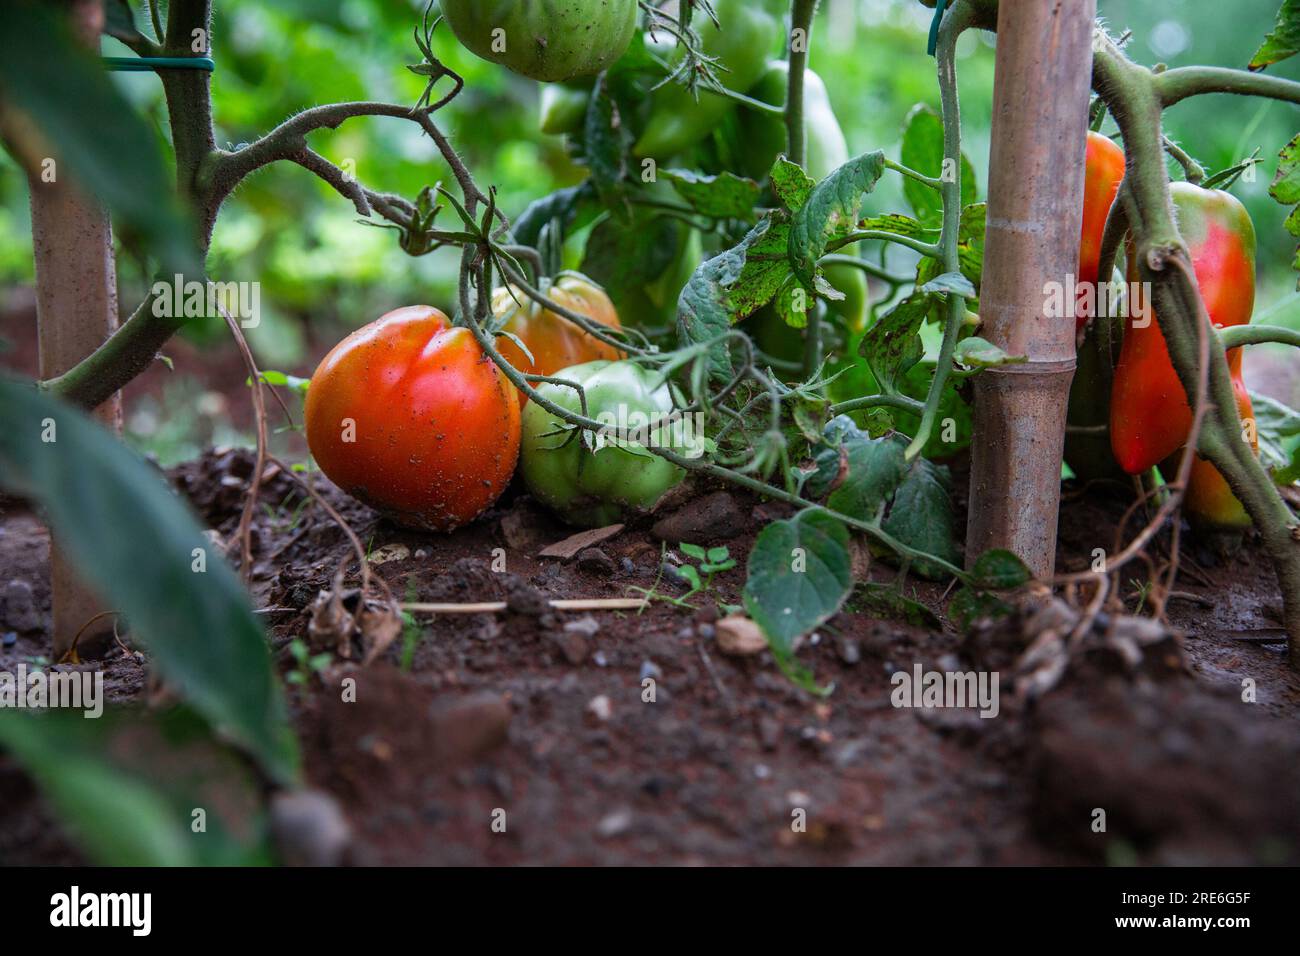 Primo piano di alcuni pomodori che stanno maturando in un orto, pomodori verdi e rossi Foto Stock